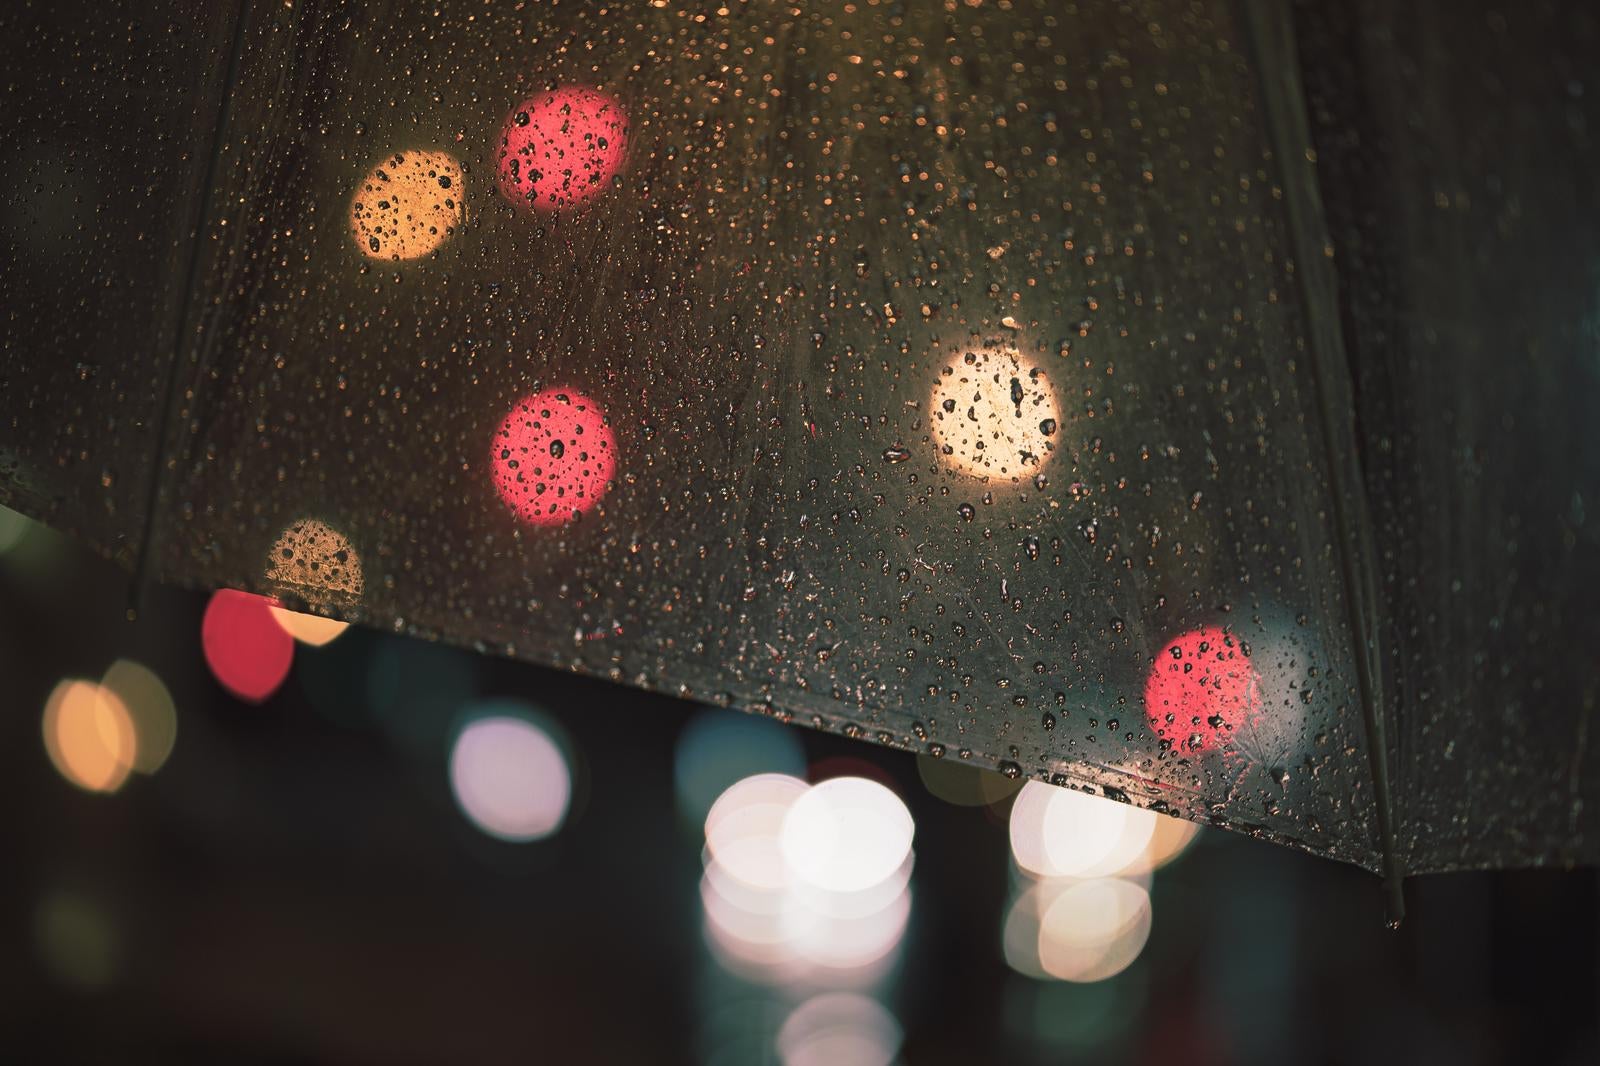 「傘の雨粒と街灯の丸ボケ」の写真